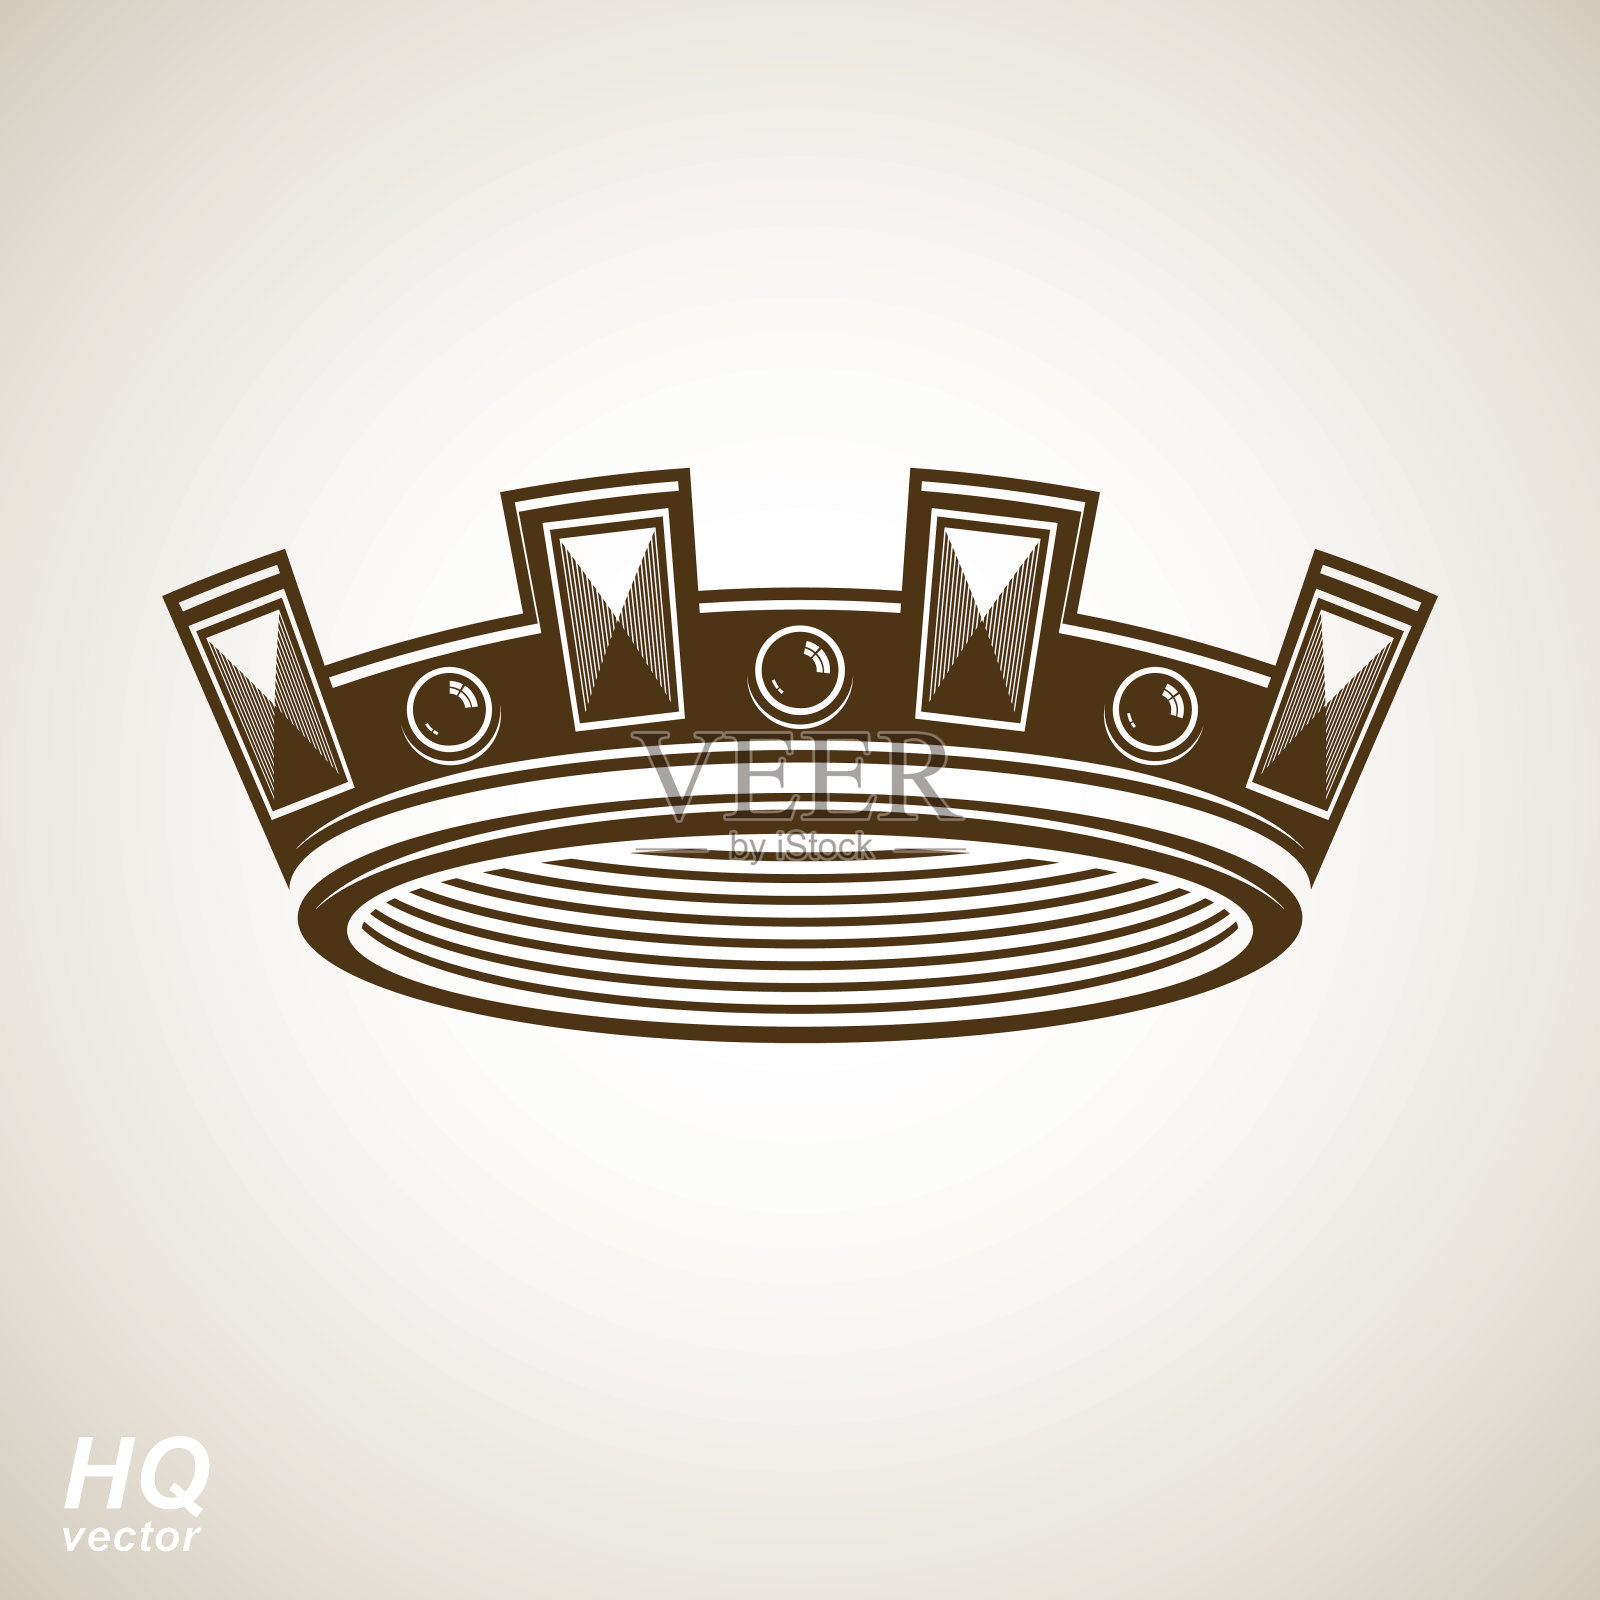 向量帝国帝国皇冠。经典的冠状头饰插画图片素材